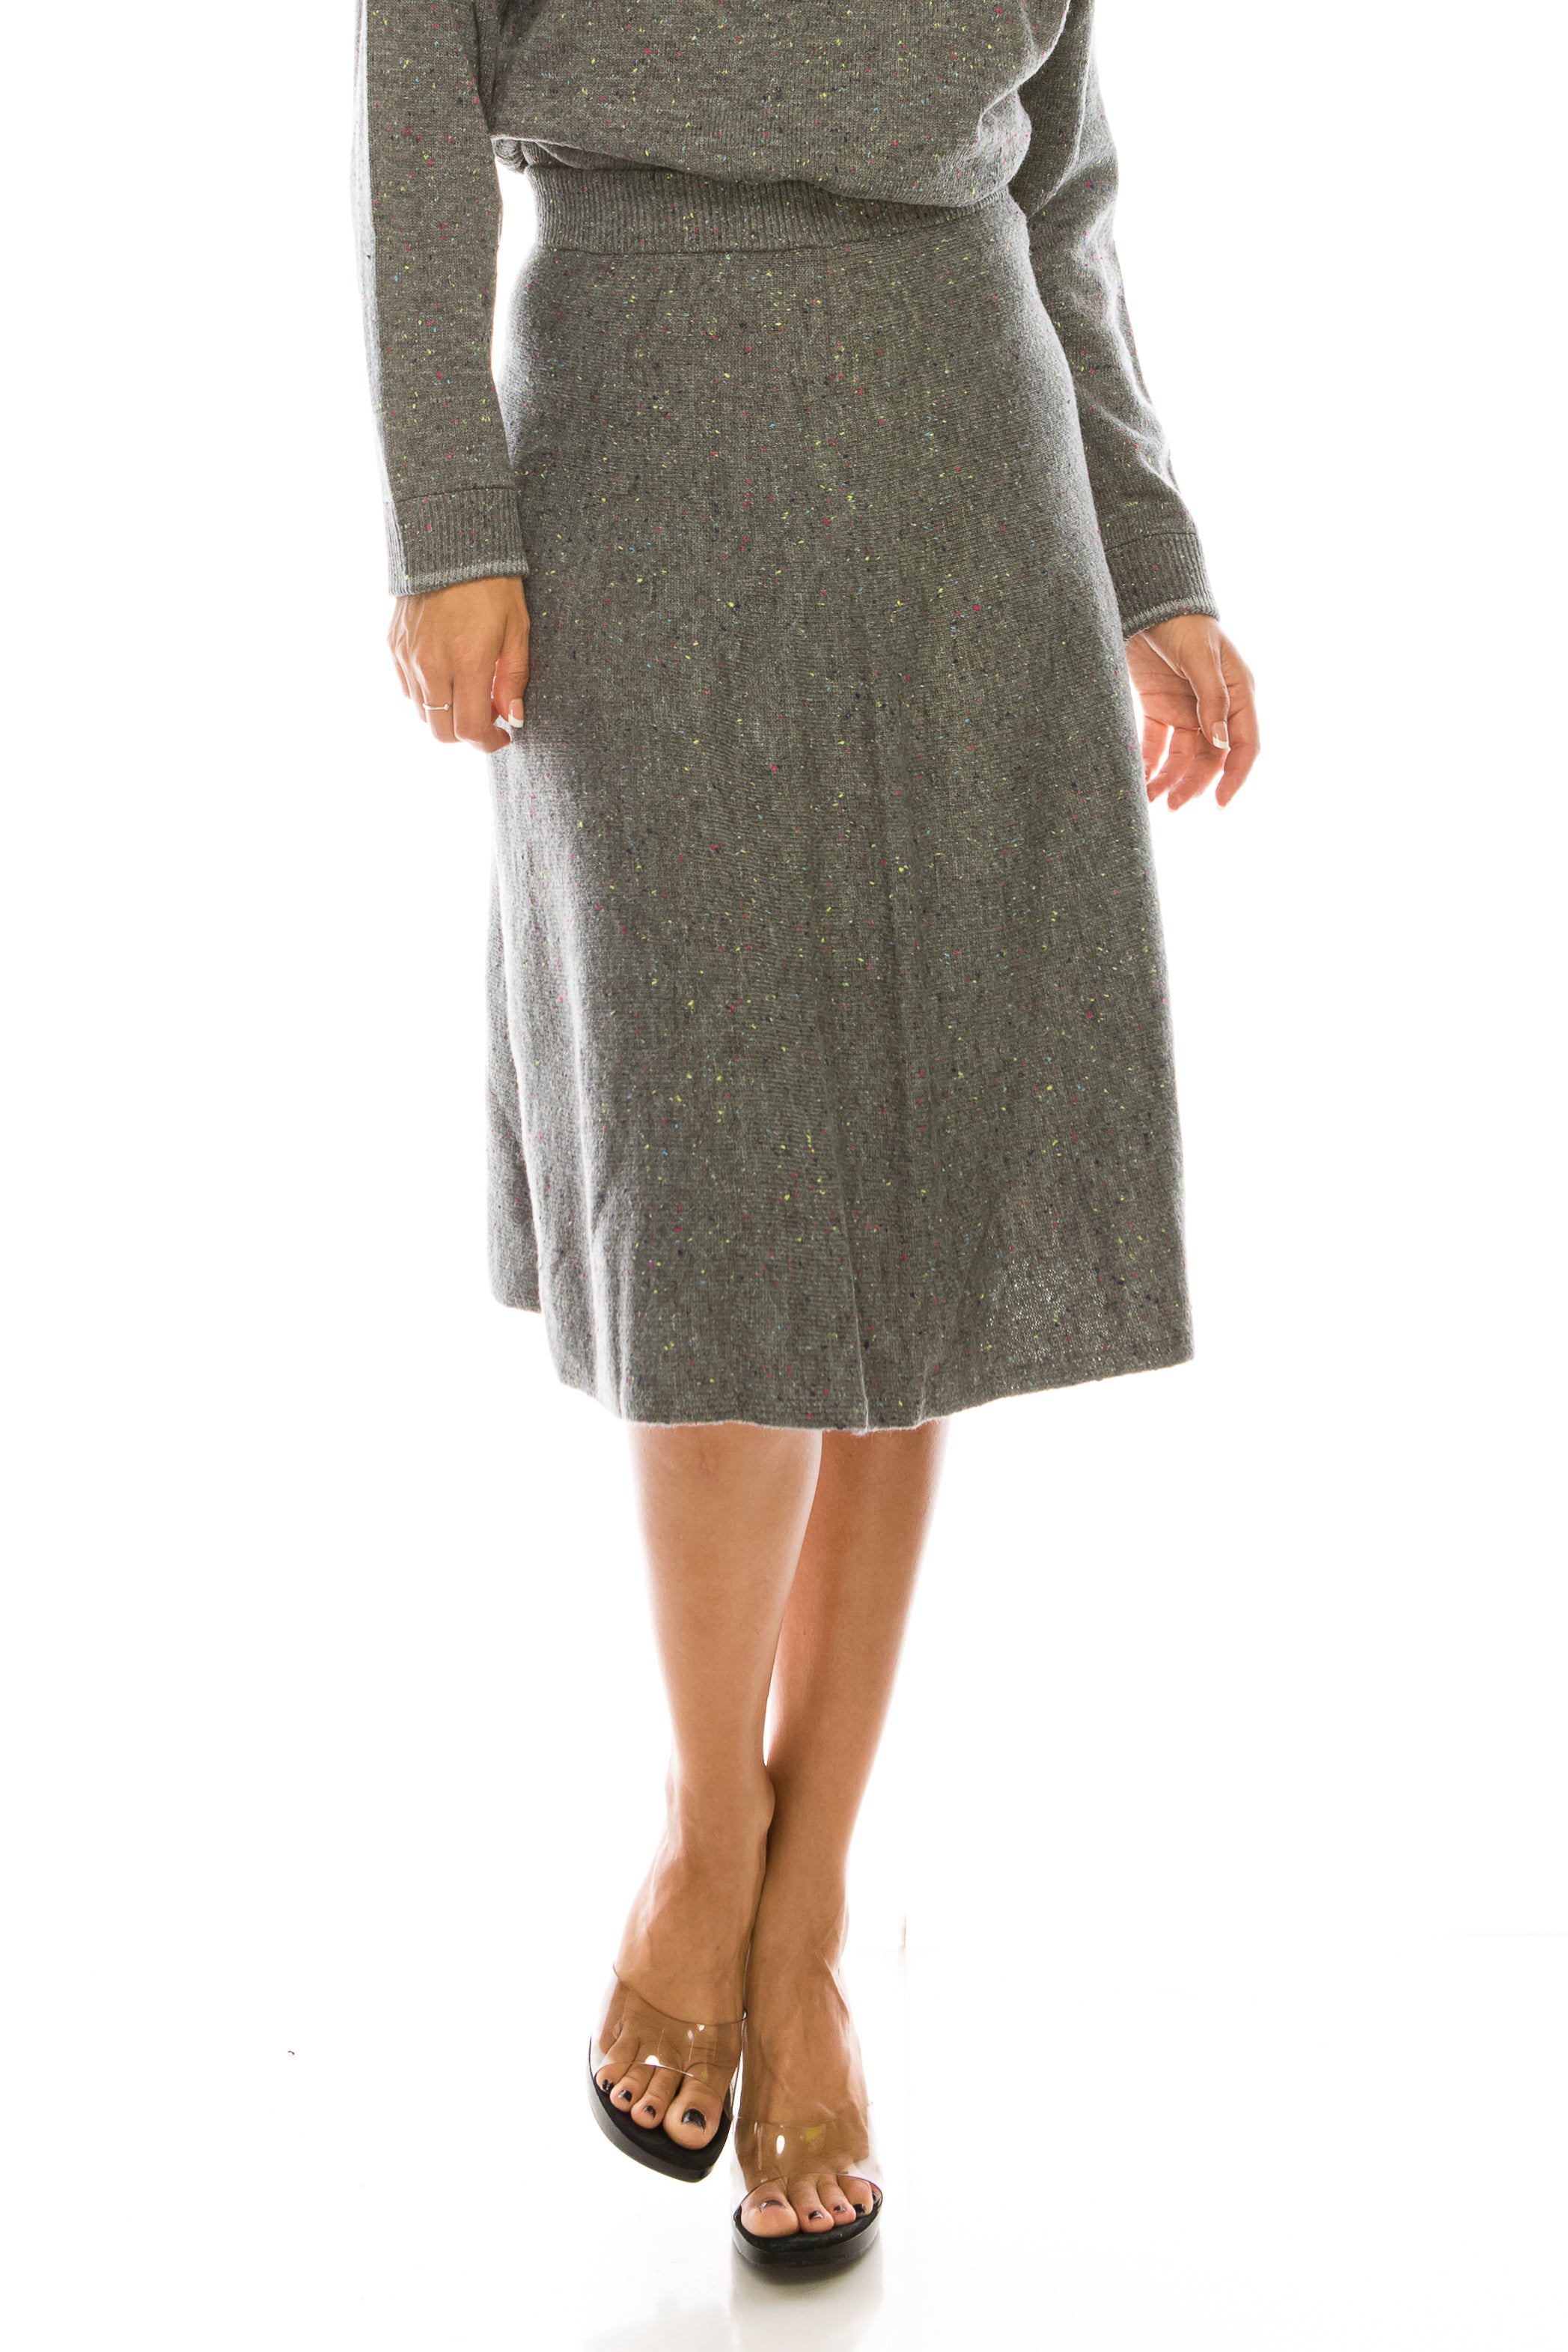 Speckled Knit Skirt - Set